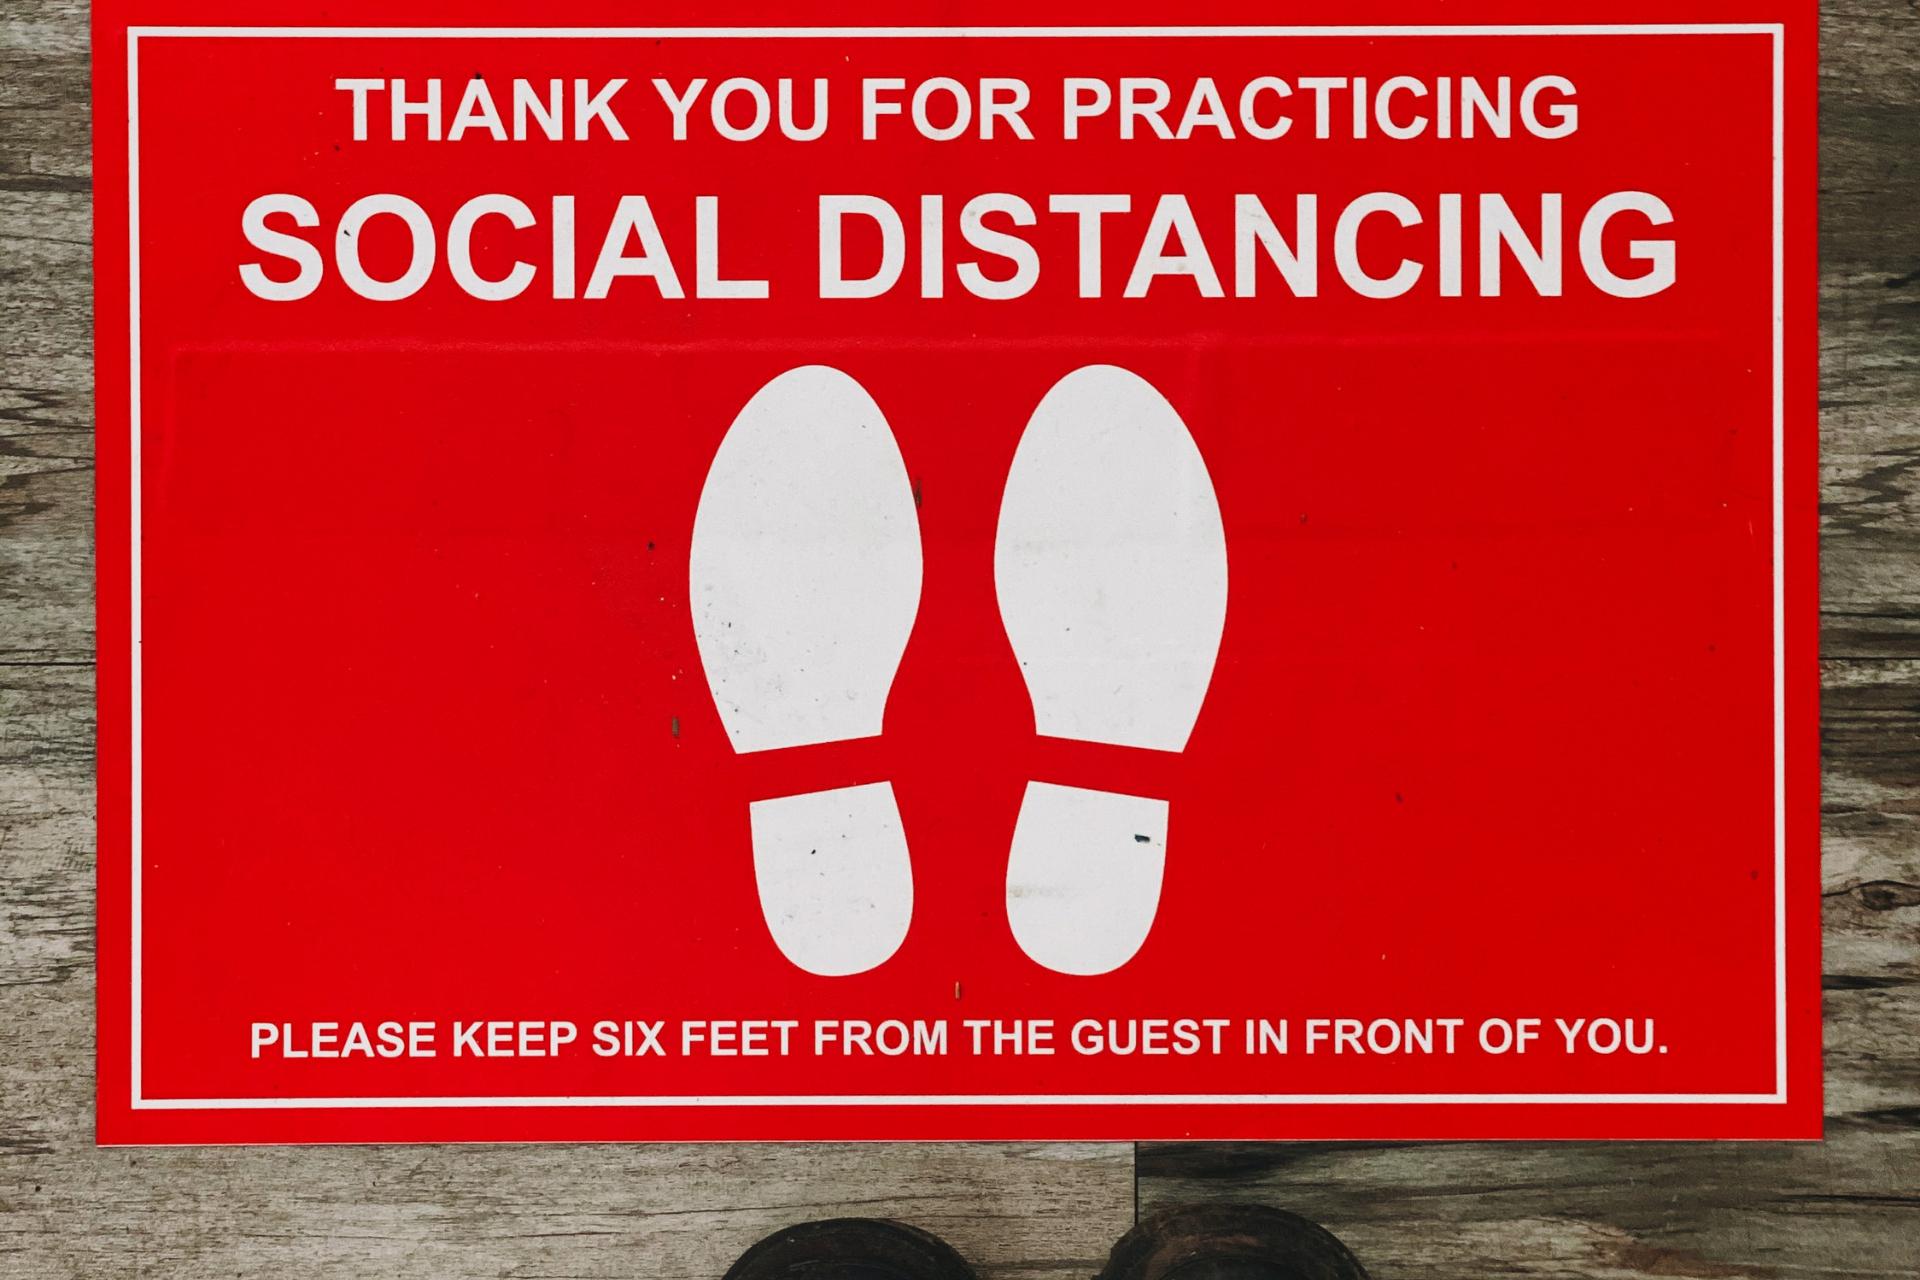 letrero de distanciamiento social en el suelo para mantener una distancia de 6 pies entre los clientes